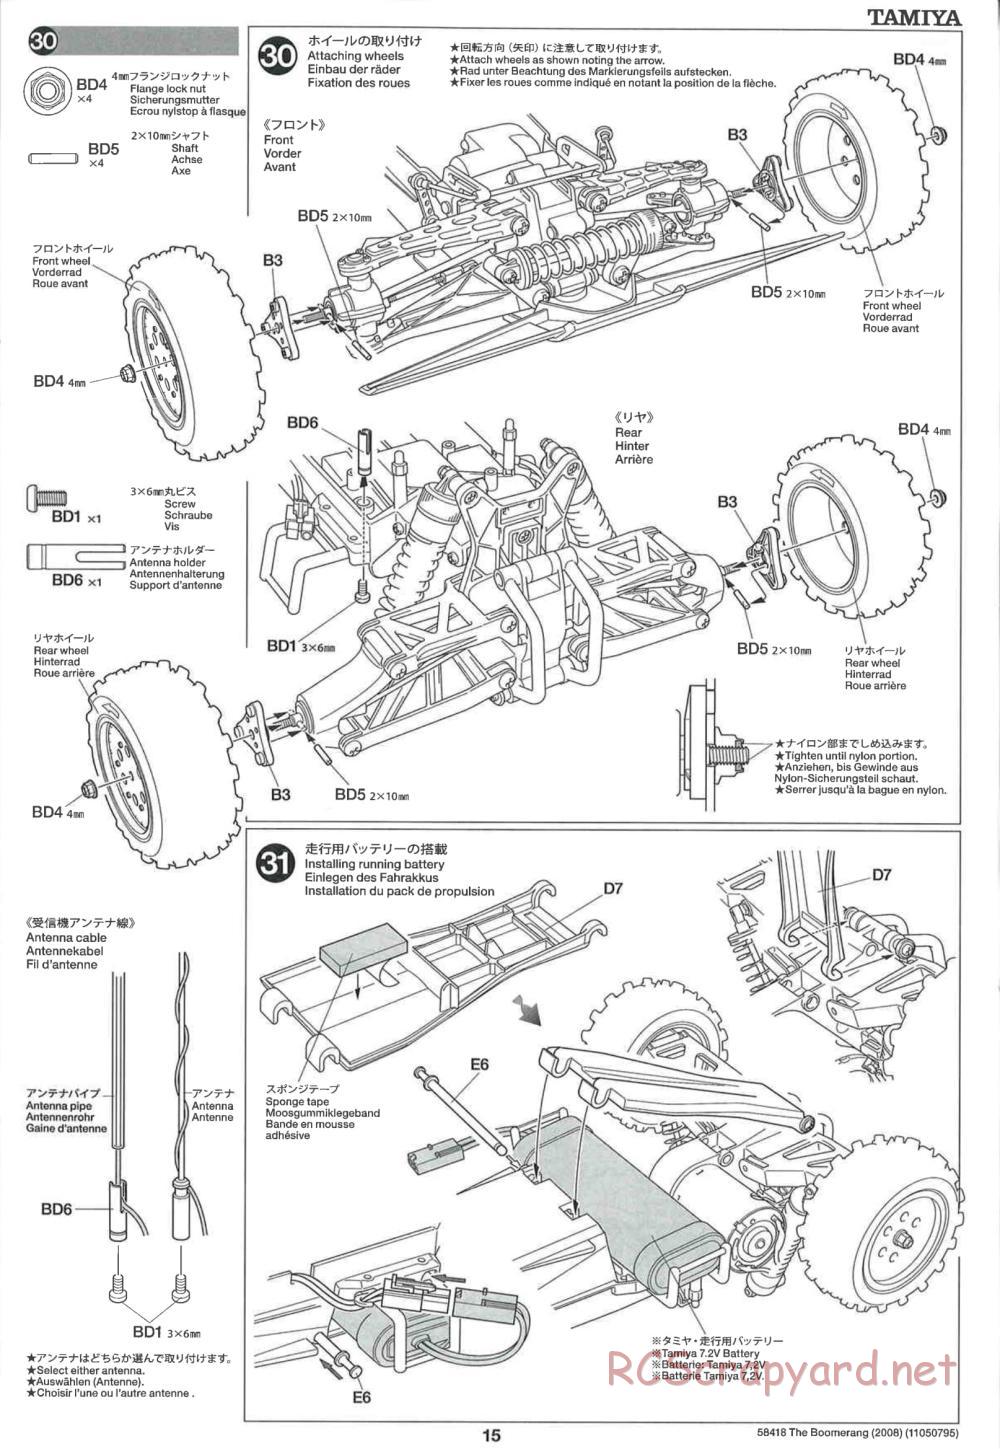 Tamiya - The Boomerang 2008 Chassis - Manual - Page 15